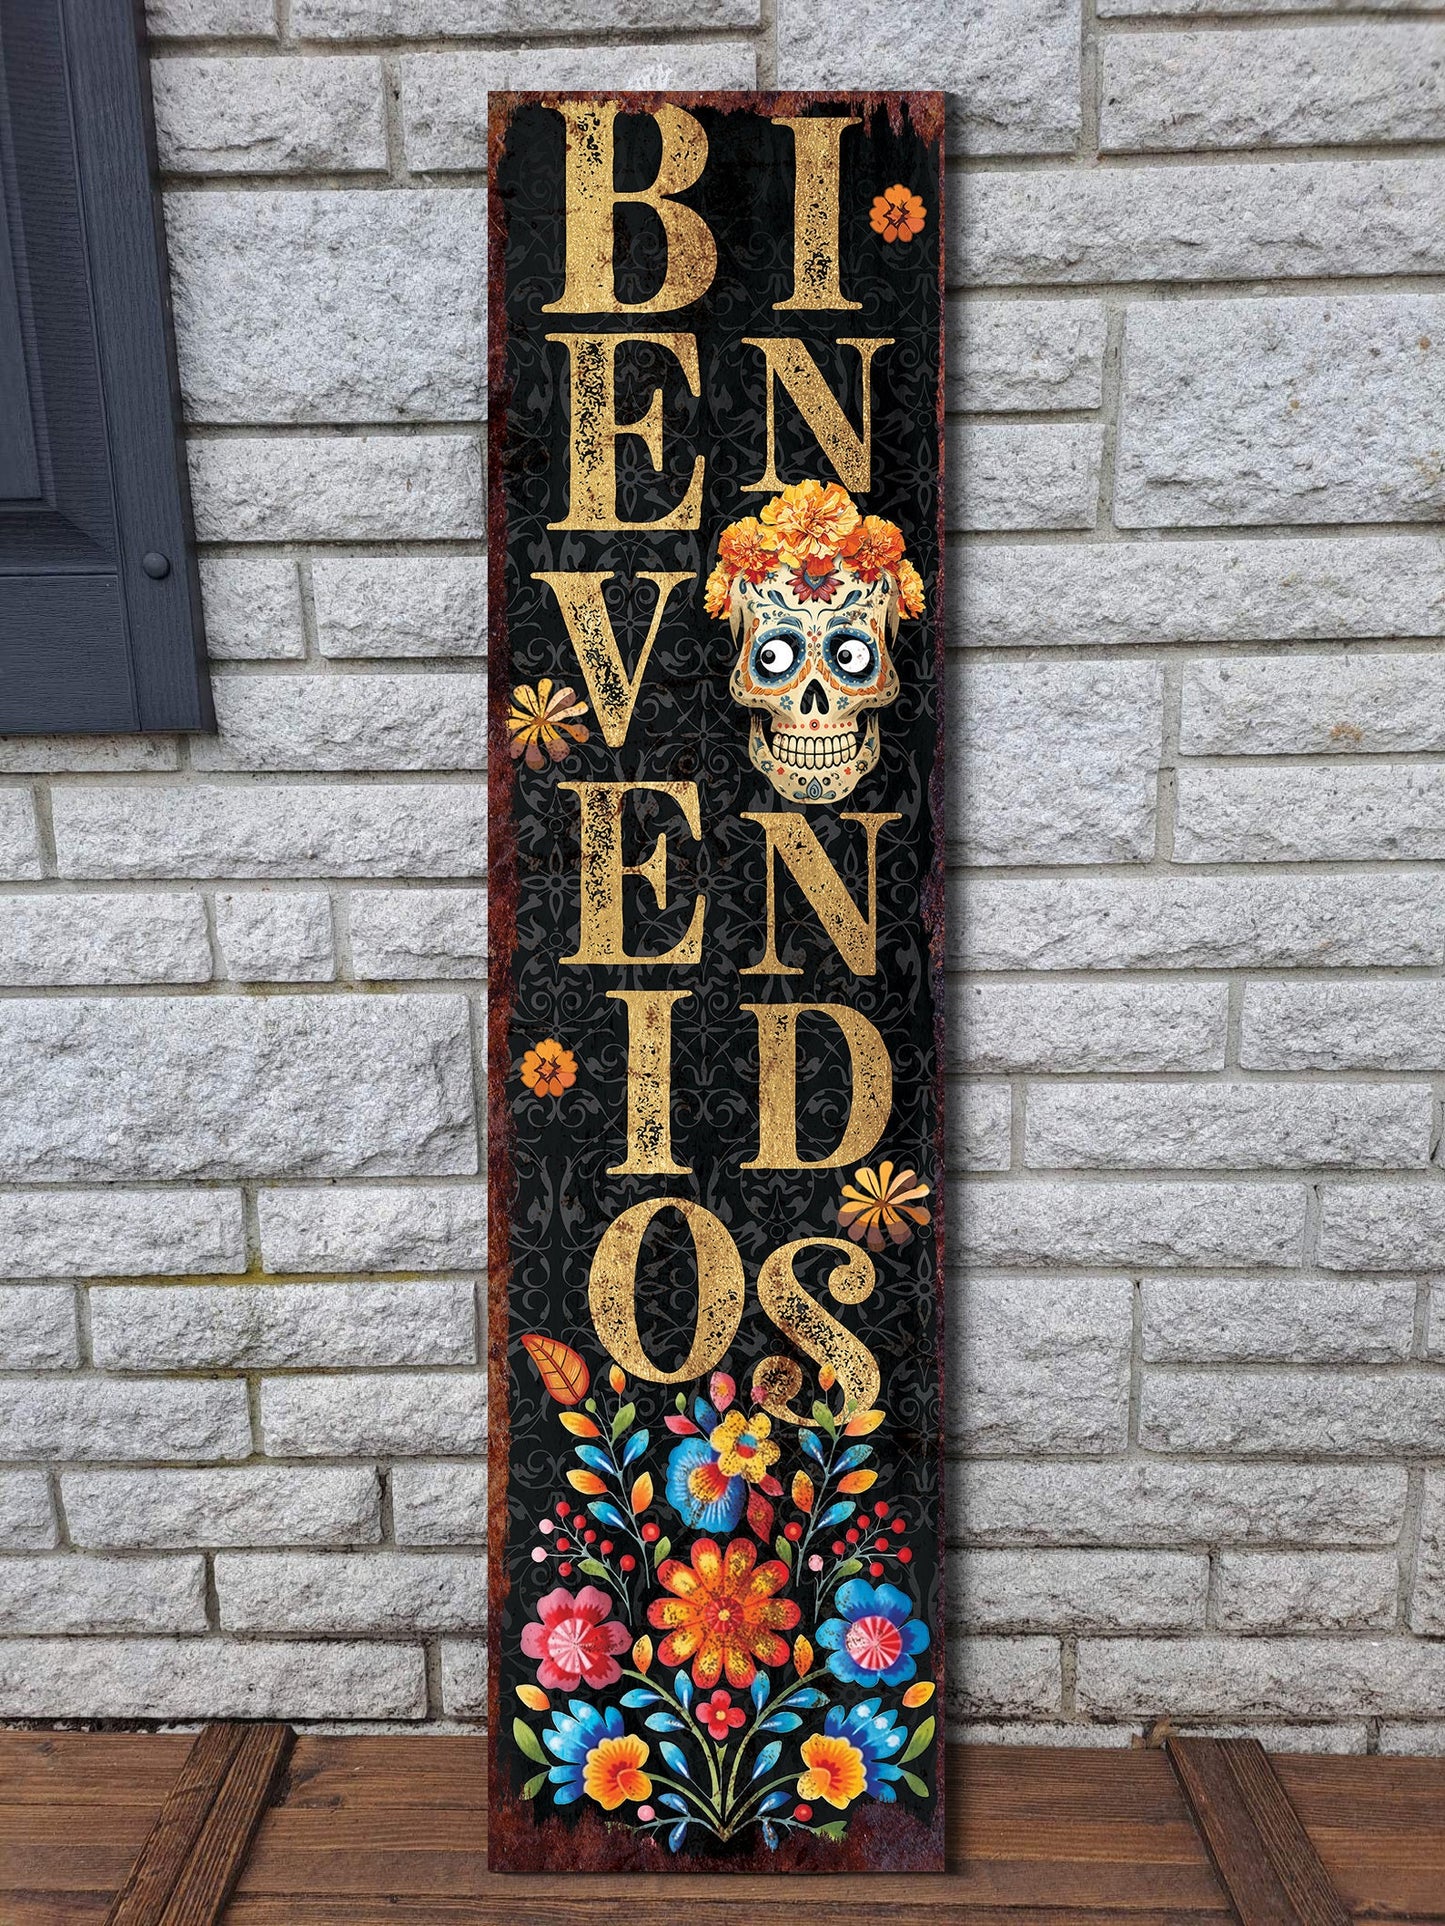 36in 'Bienvenidos' Sugar Skull Porch Sign - Dia De Los Muertos Porch Sign, Rustic Modern Farmhouse Entryway Decor